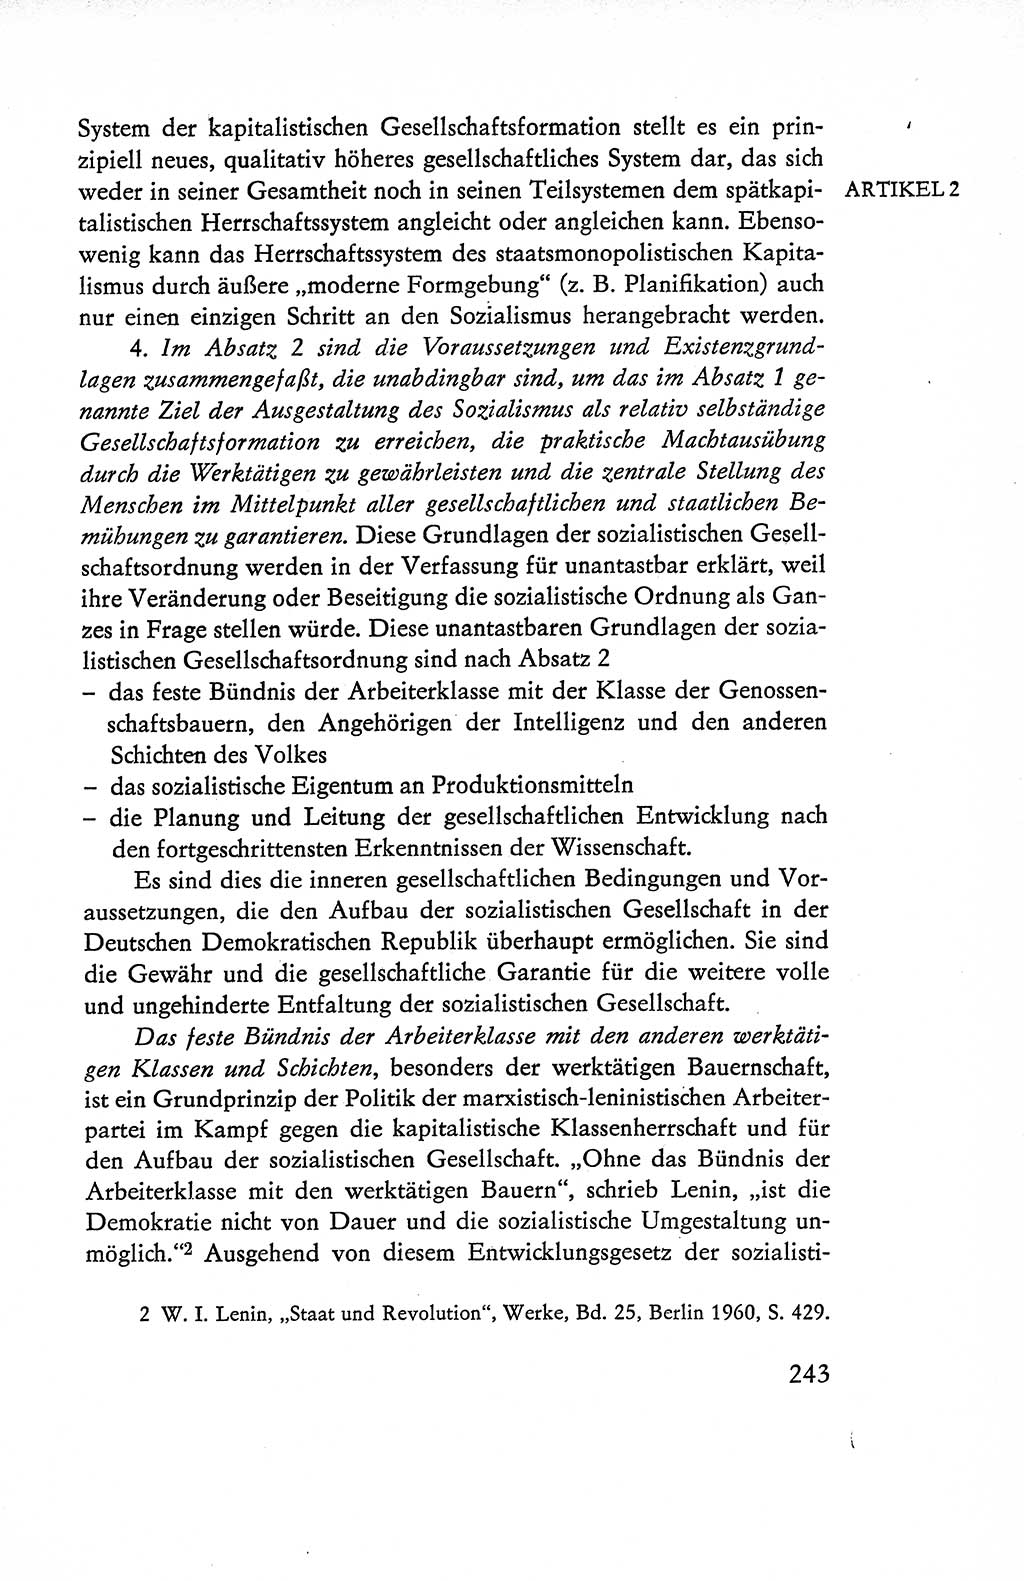 Verfassung der Deutschen Demokratischen Republik (DDR), Dokumente, Kommentar 1969, Band 1, Seite 243 (Verf. DDR Dok. Komm. 1969, Bd. 1, S. 243)